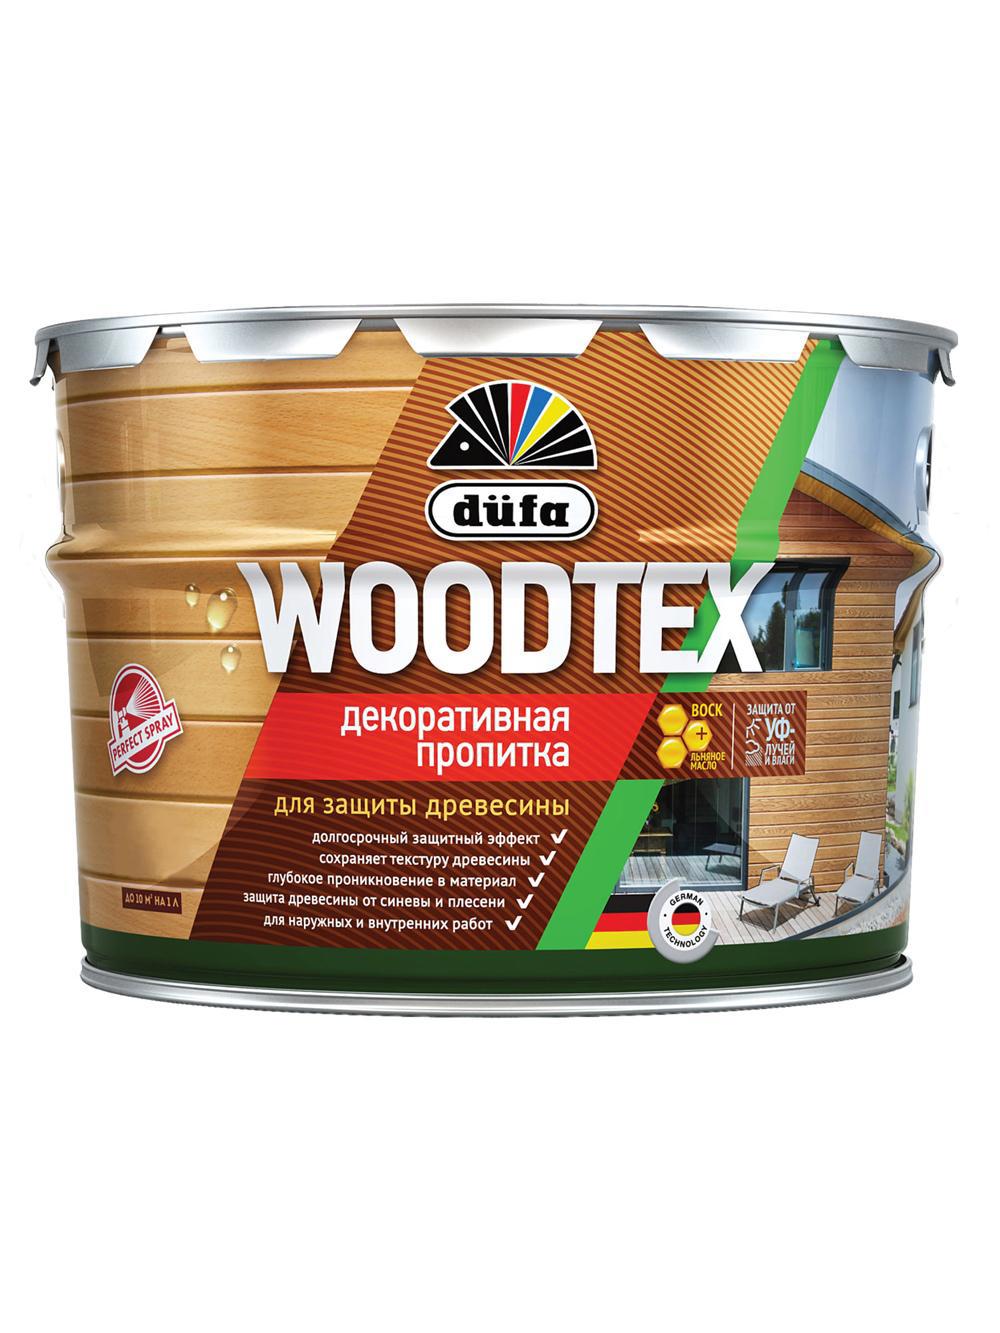 90194548 Пропитка декоративная для защиты древесины алкидная Woodtex орех 3 л STLM-0128480 DUFA